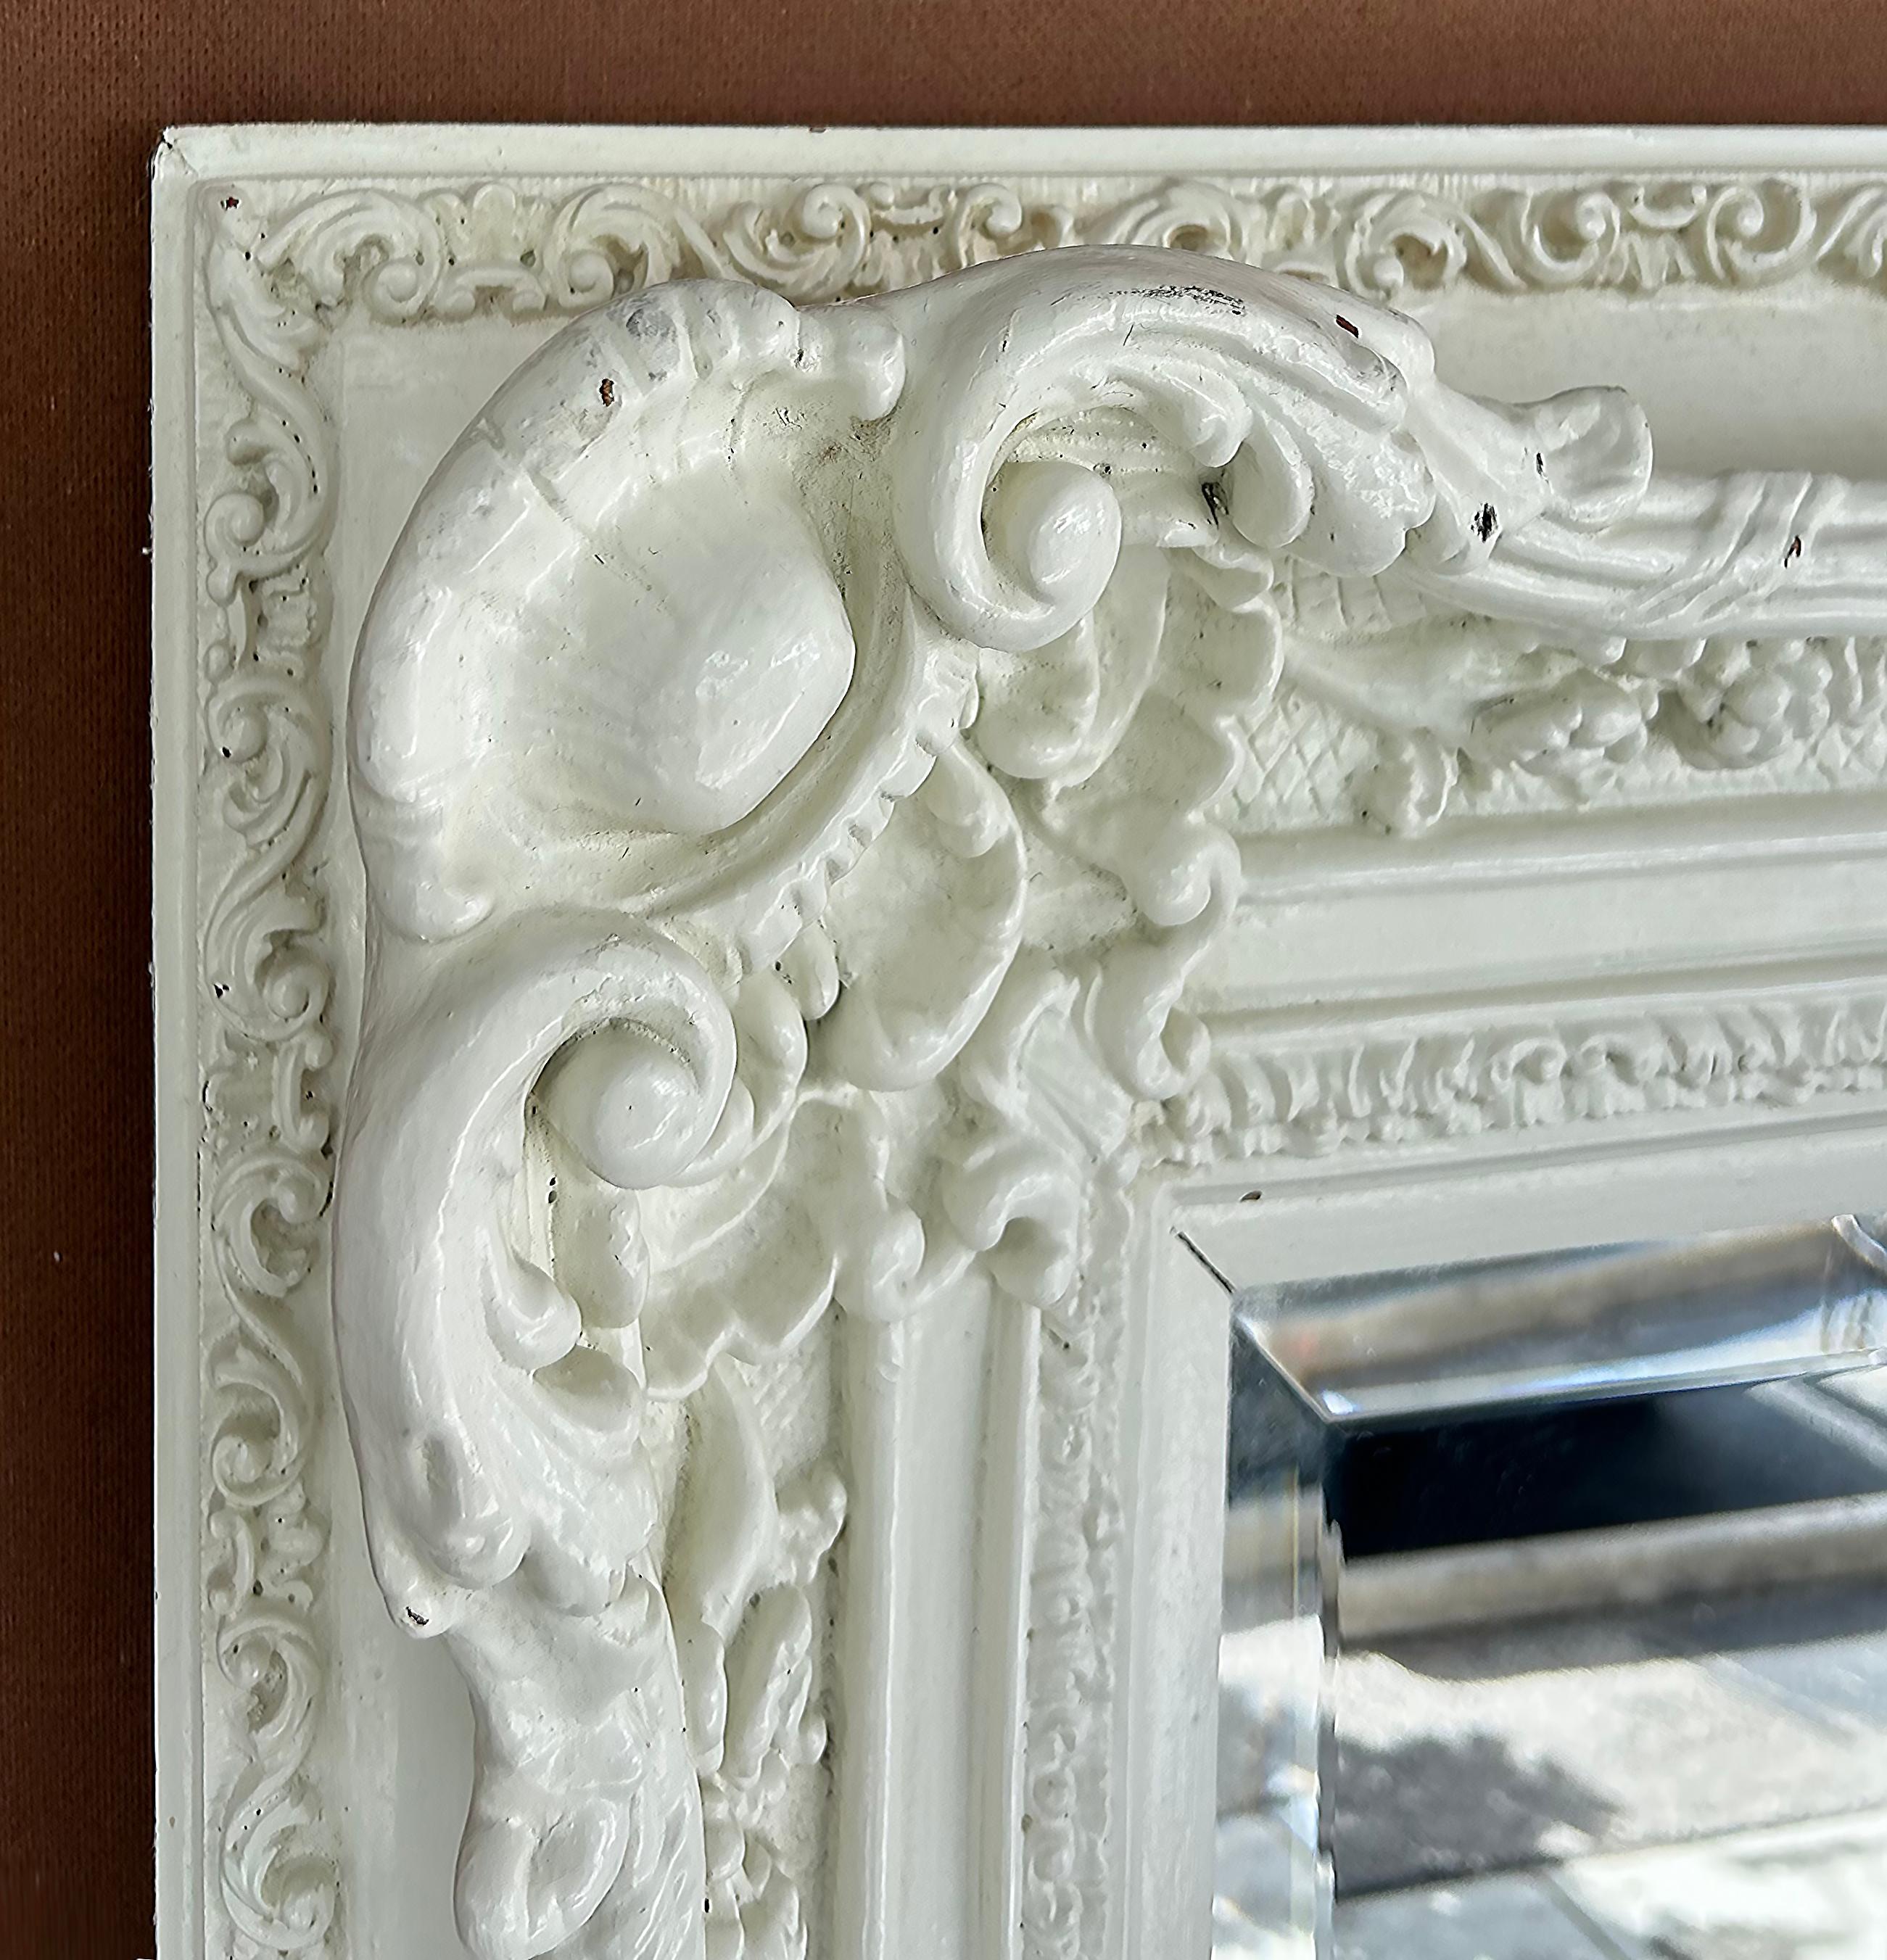 Monumentaler Shabby Chic geschnitzter, abgeschrägter, abgeschrägter Holzspiegel in Weiß lackiert

Zum Verkauf angeboten wird eine sehr große kunstvoll geschnitzte Holz abgeschrägten Spiegel, der weiß lackiert wurde. Der Spiegel hat eine breite